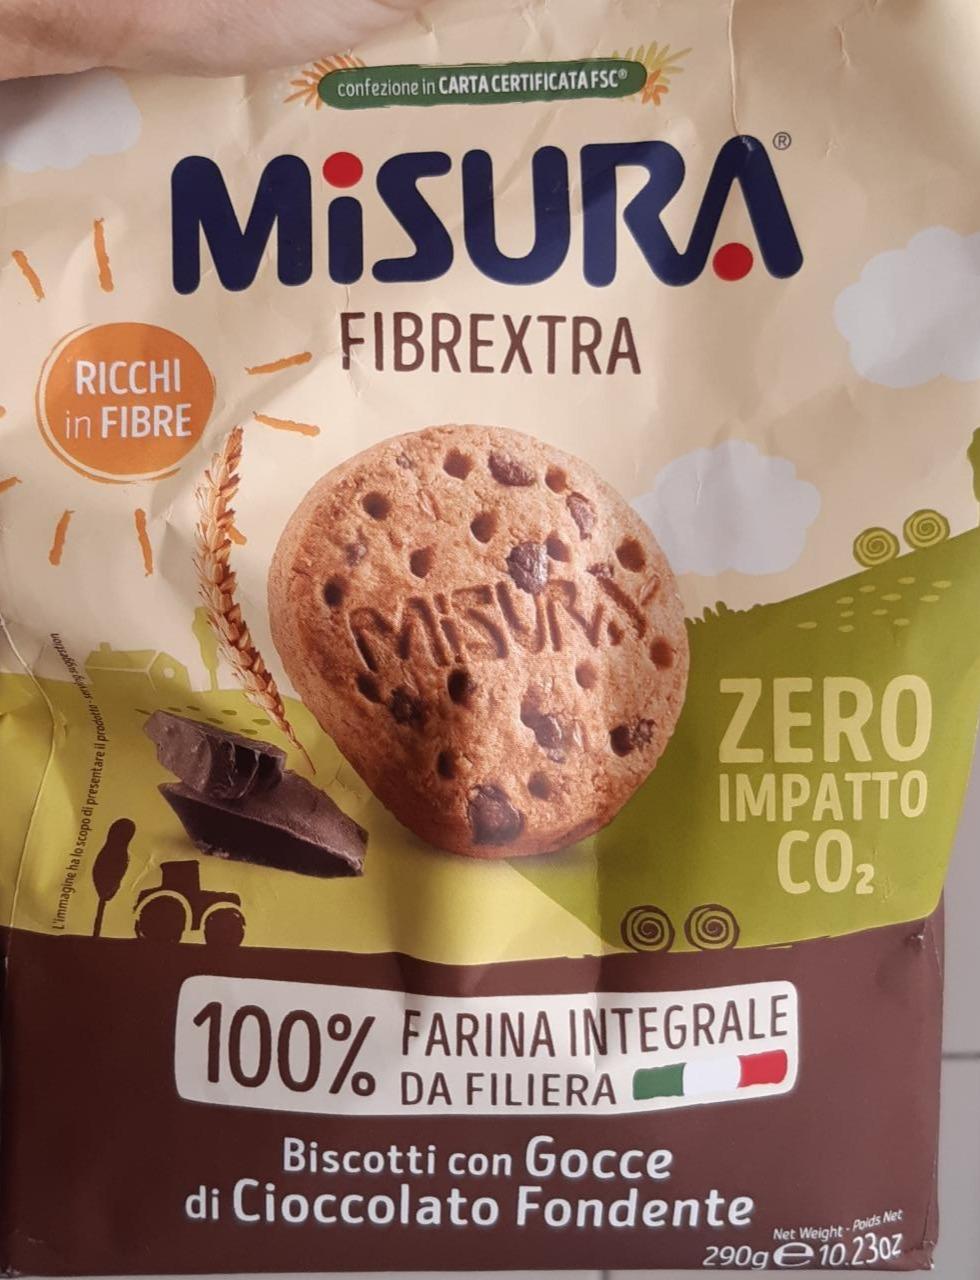 Fotografie - Biscotti con Gocce di Cioccolato Fondente Misura